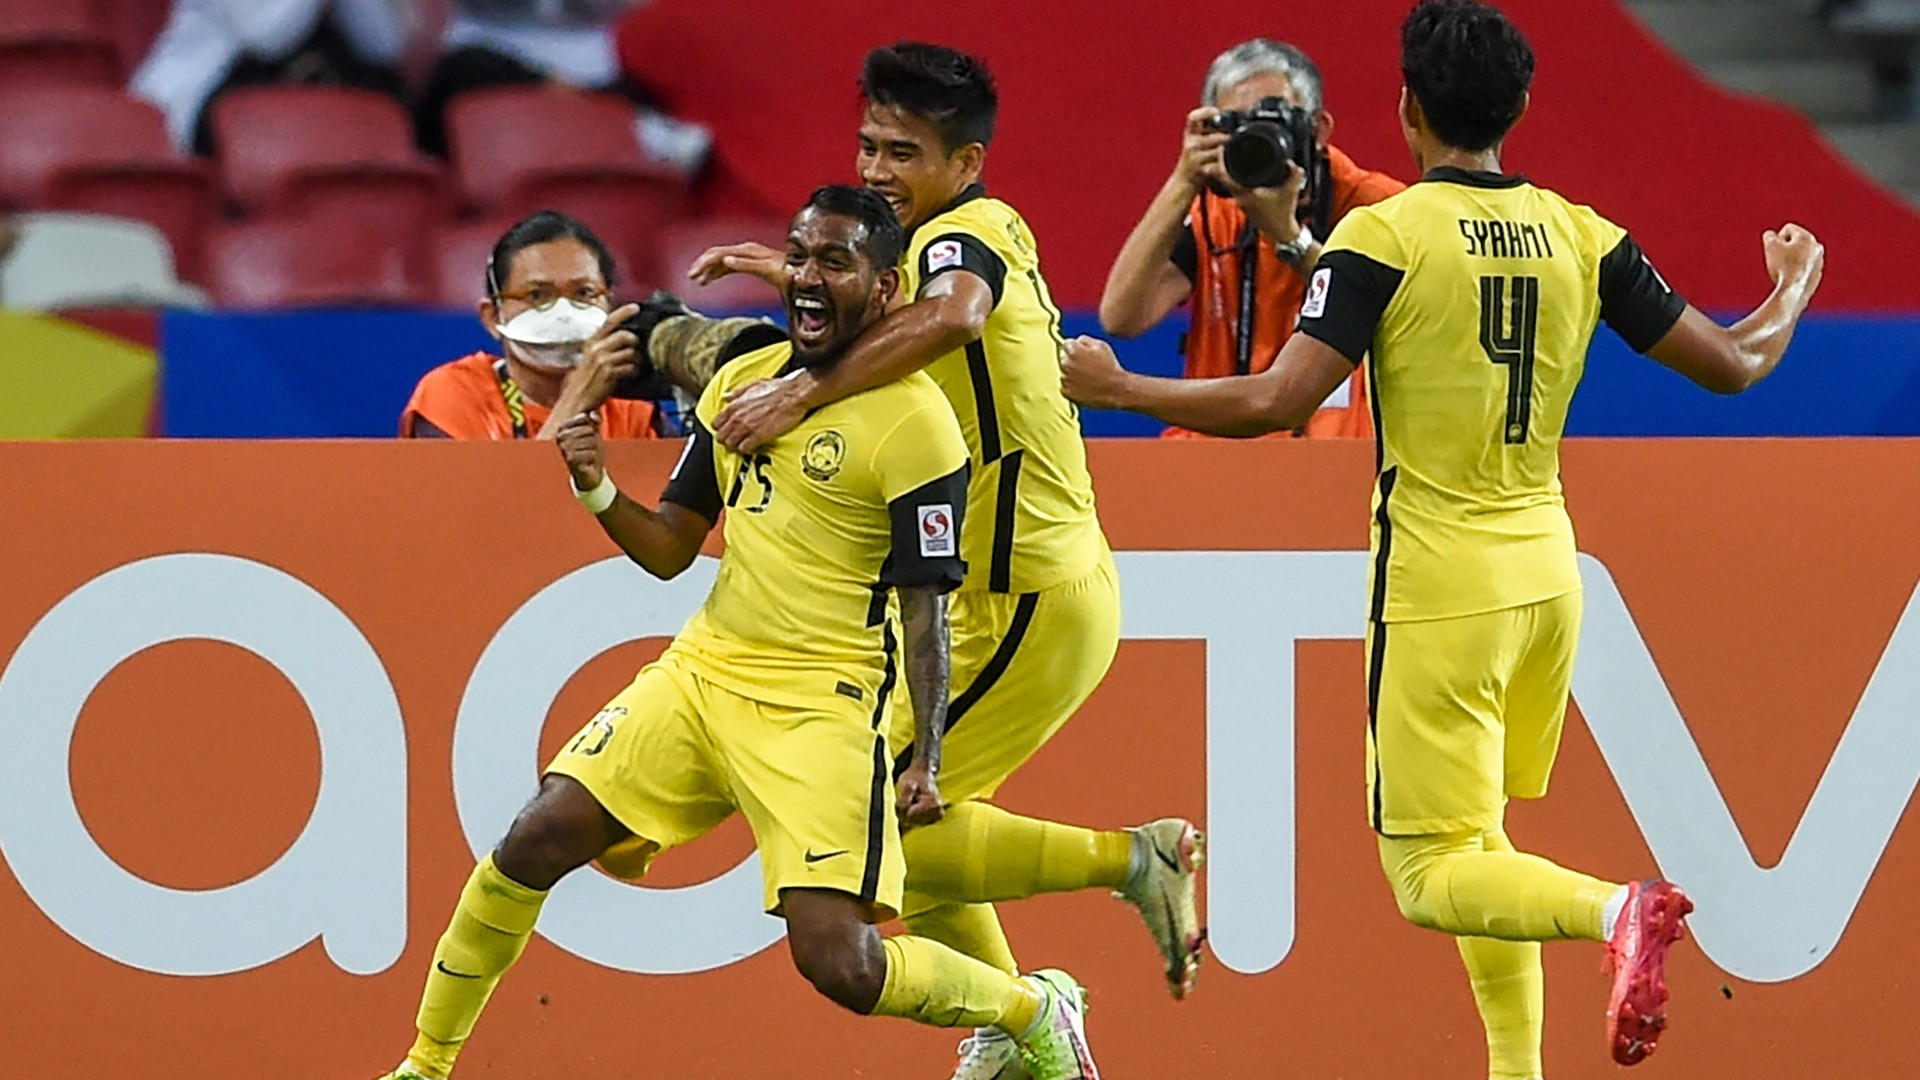 Trận đấu gần nhất của Malaysia là chiến thắng 3:0 trên sân nhà trước Maldives